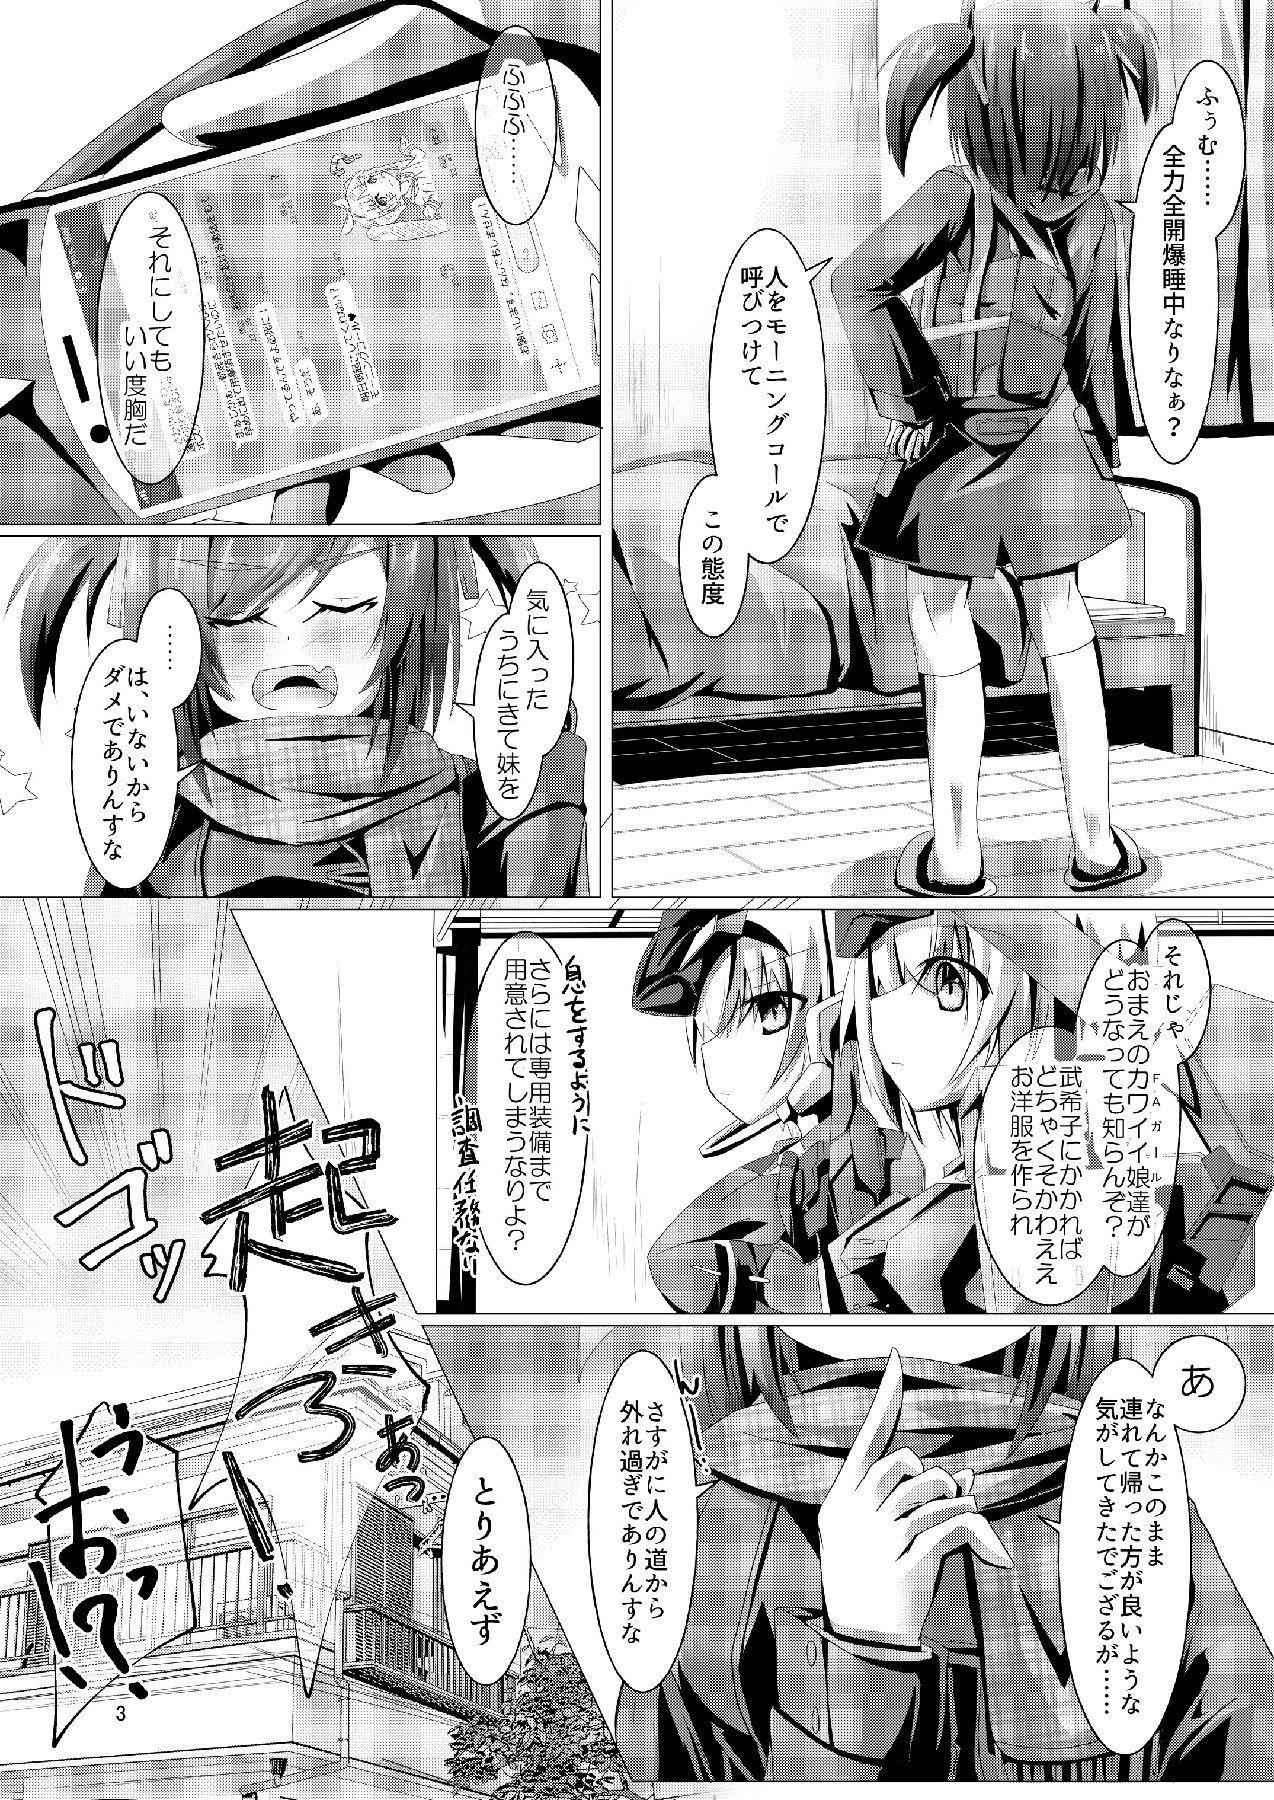 Pain Bukiko ga Kokuhaku Sareta Ken 3 - Frame arms girl One - Page 3